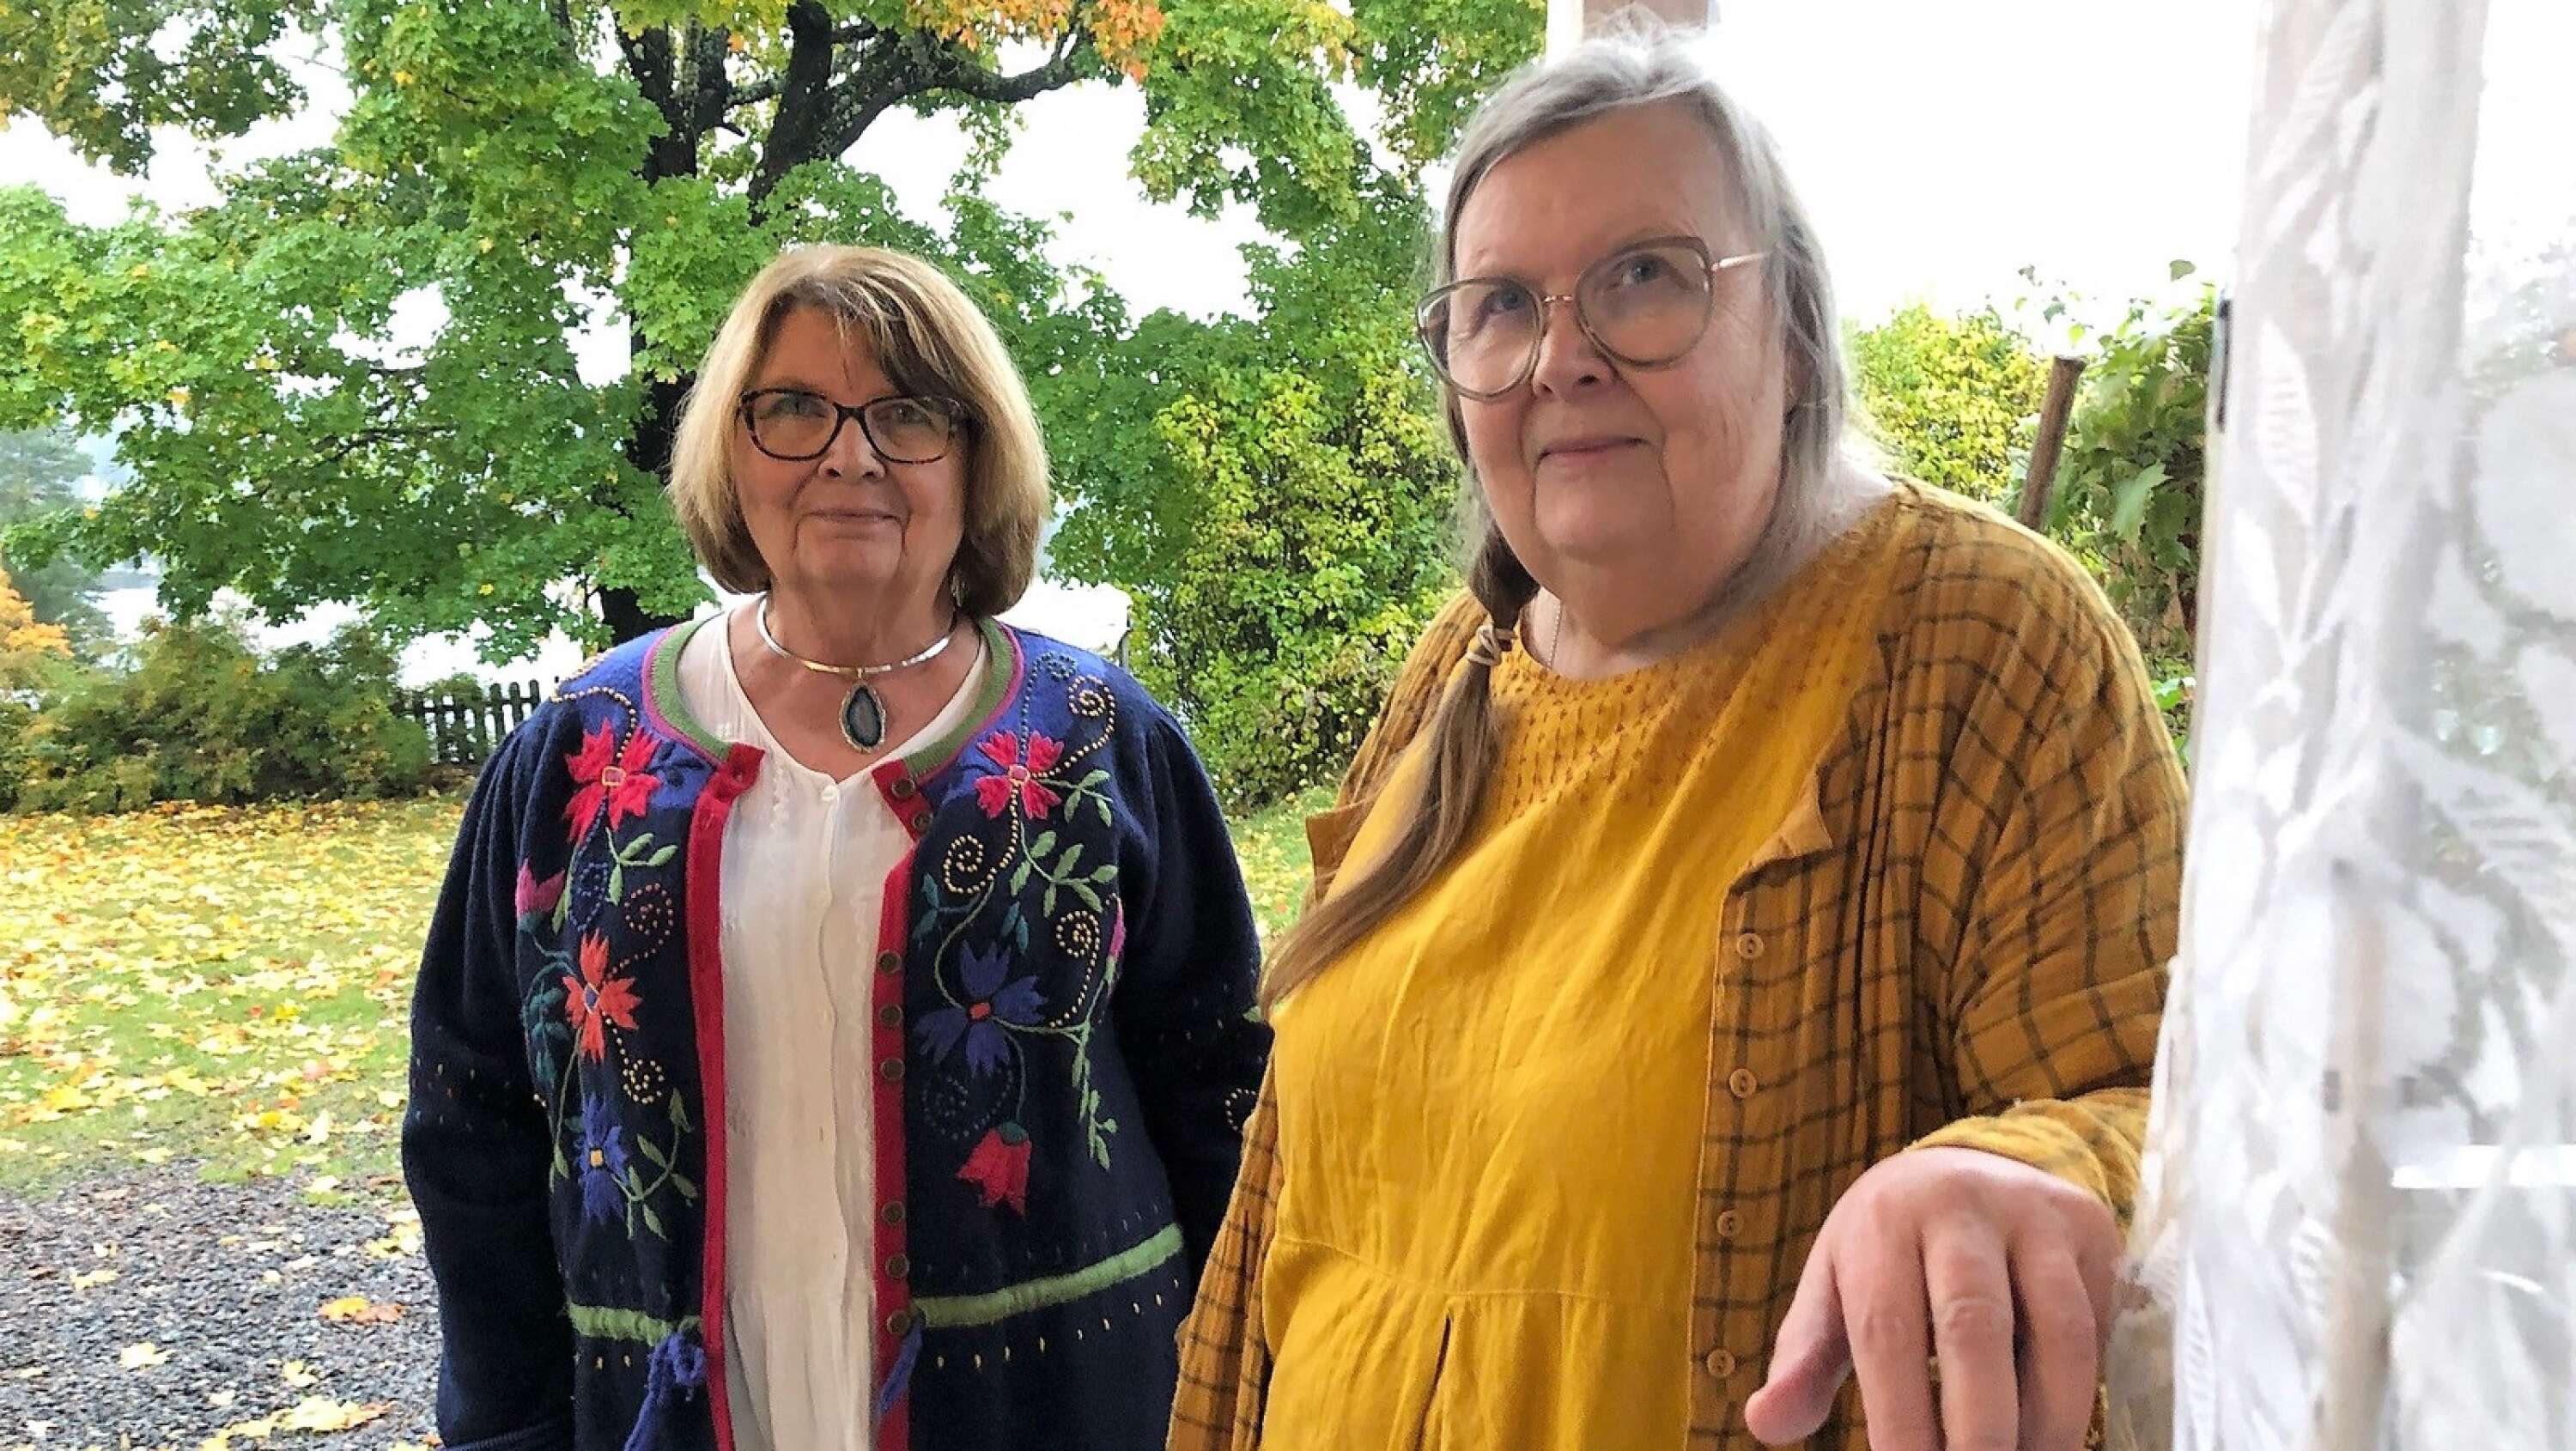 Till 400-årsjubileeet fick Nordstuga ny färg och en återställd veranda. Systrarna Christina och Birgitta fick gården av sin mor Minda Eklund 1992. 